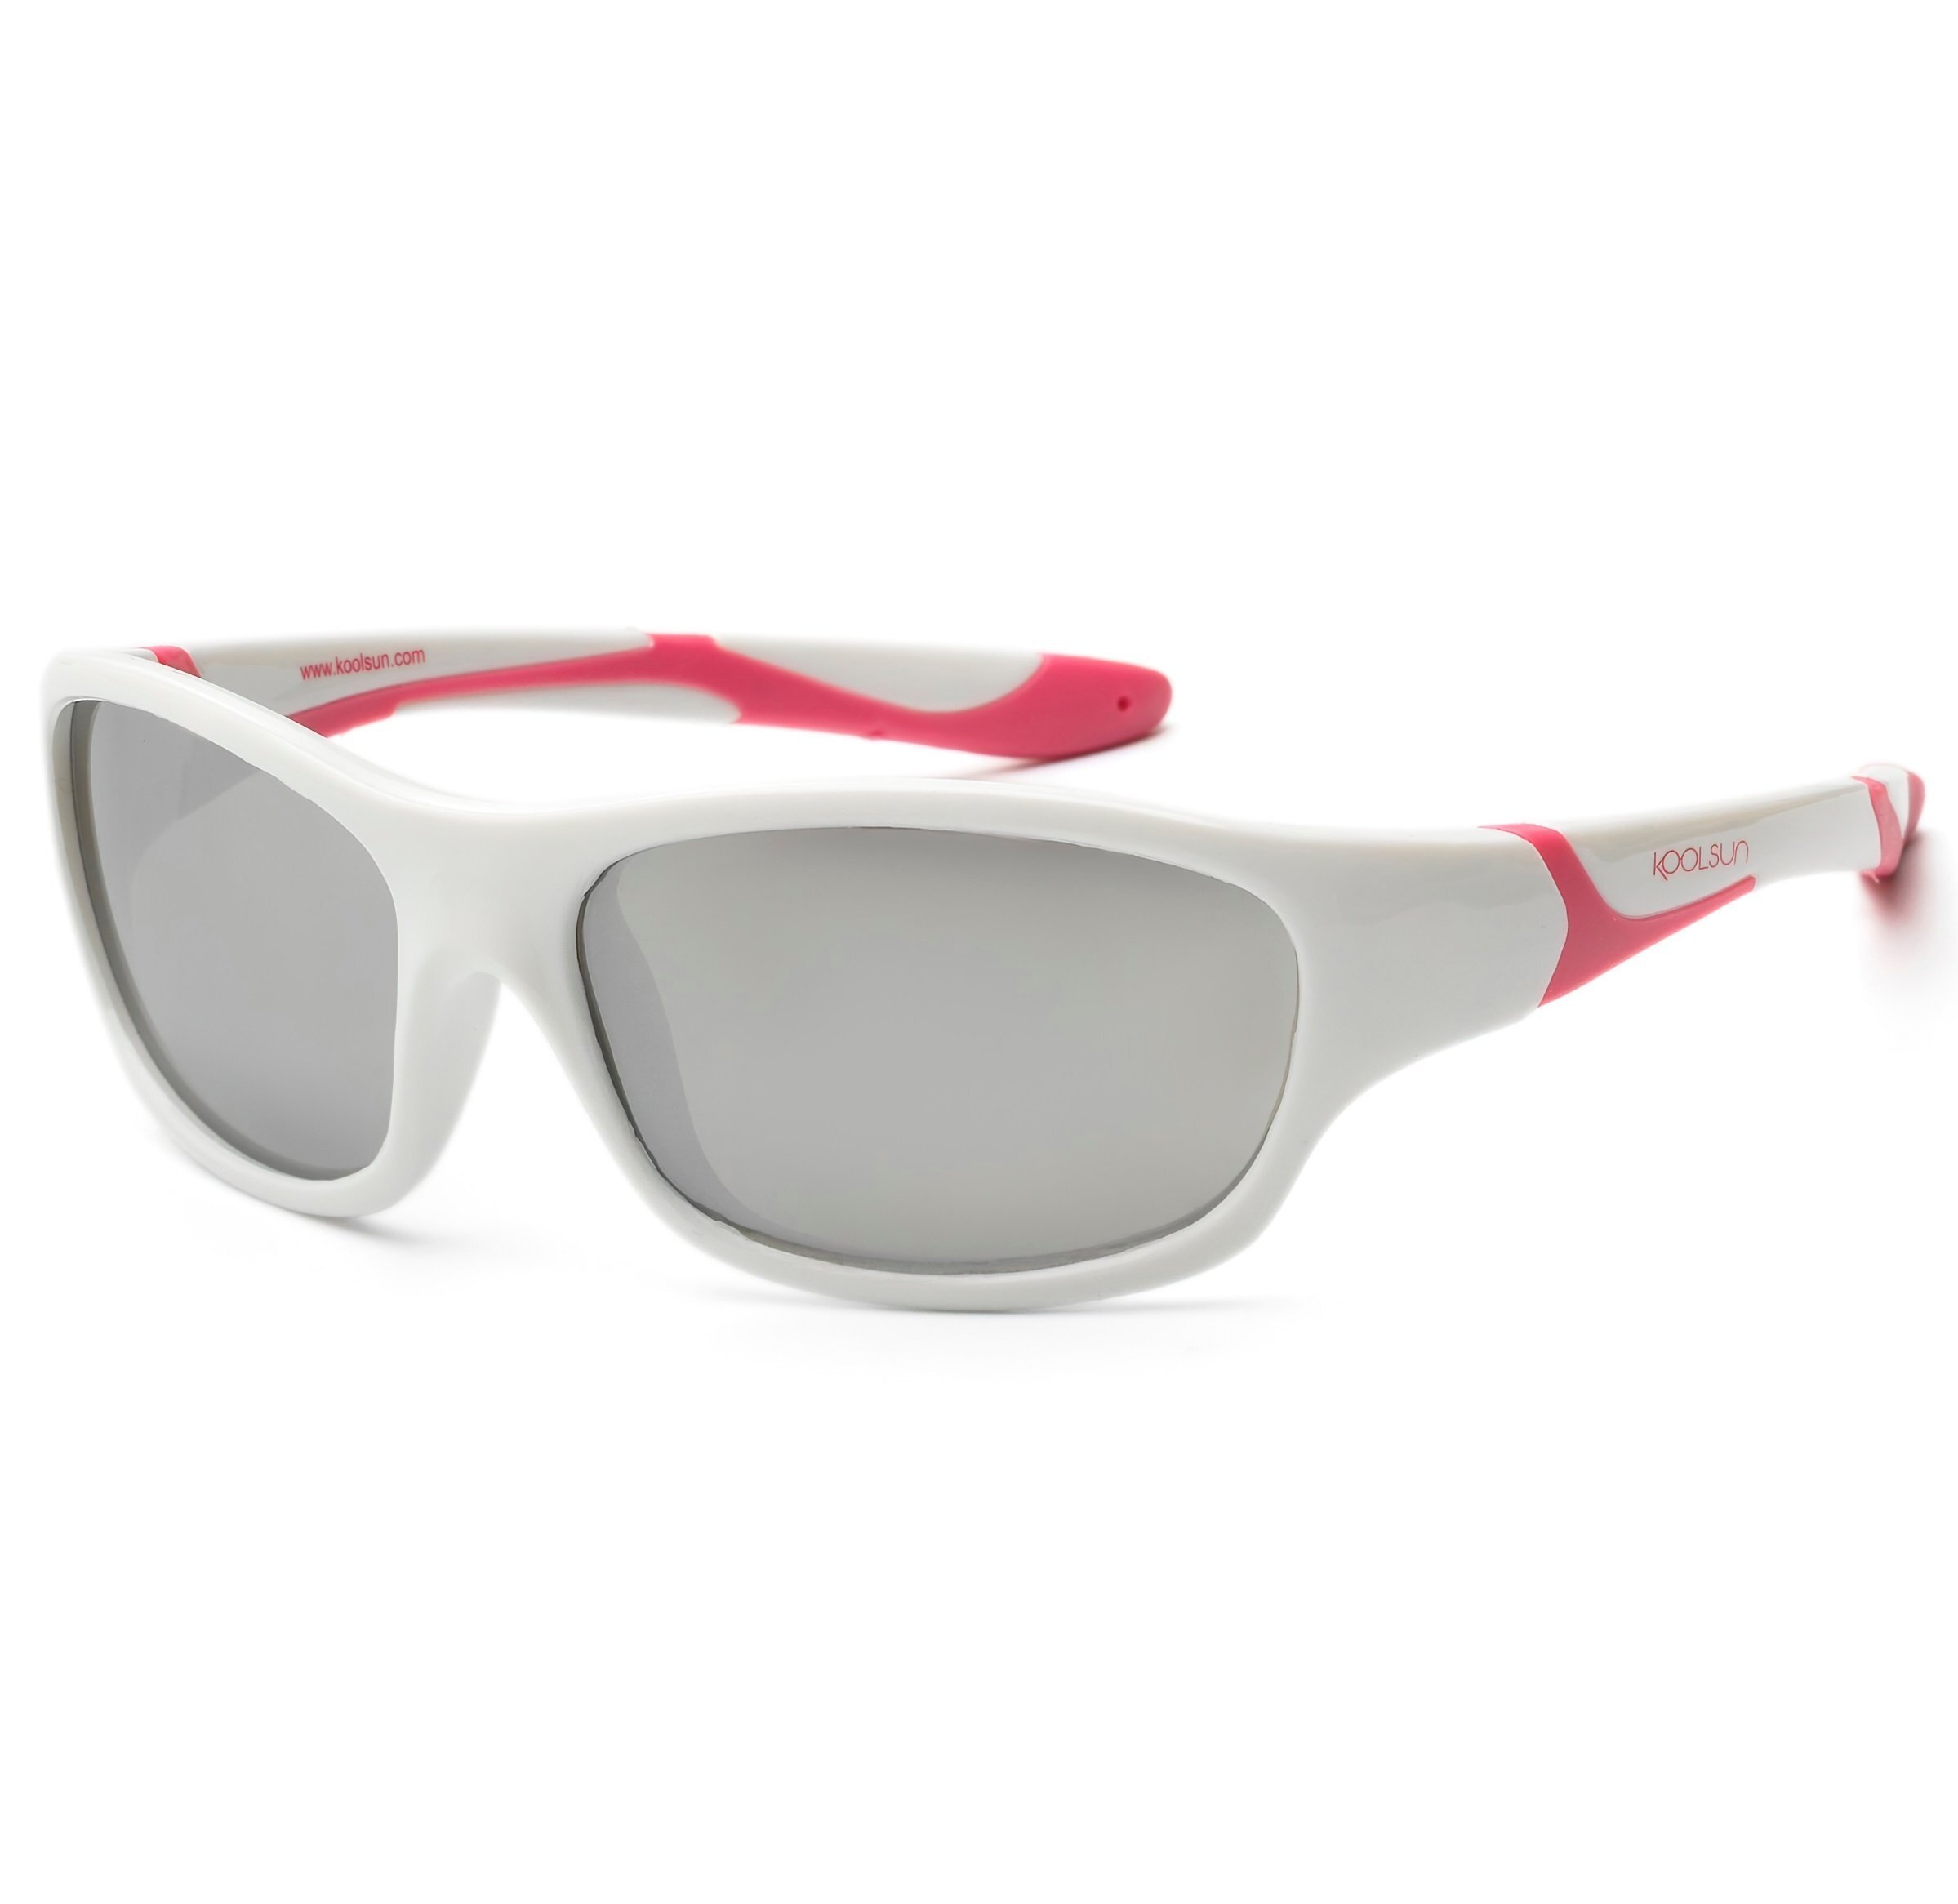 Дитячі сонцезахисні окуляри Koolsun Sport біло-рожеві (Розмір 6+) (KS-SPWHCA006)фото1